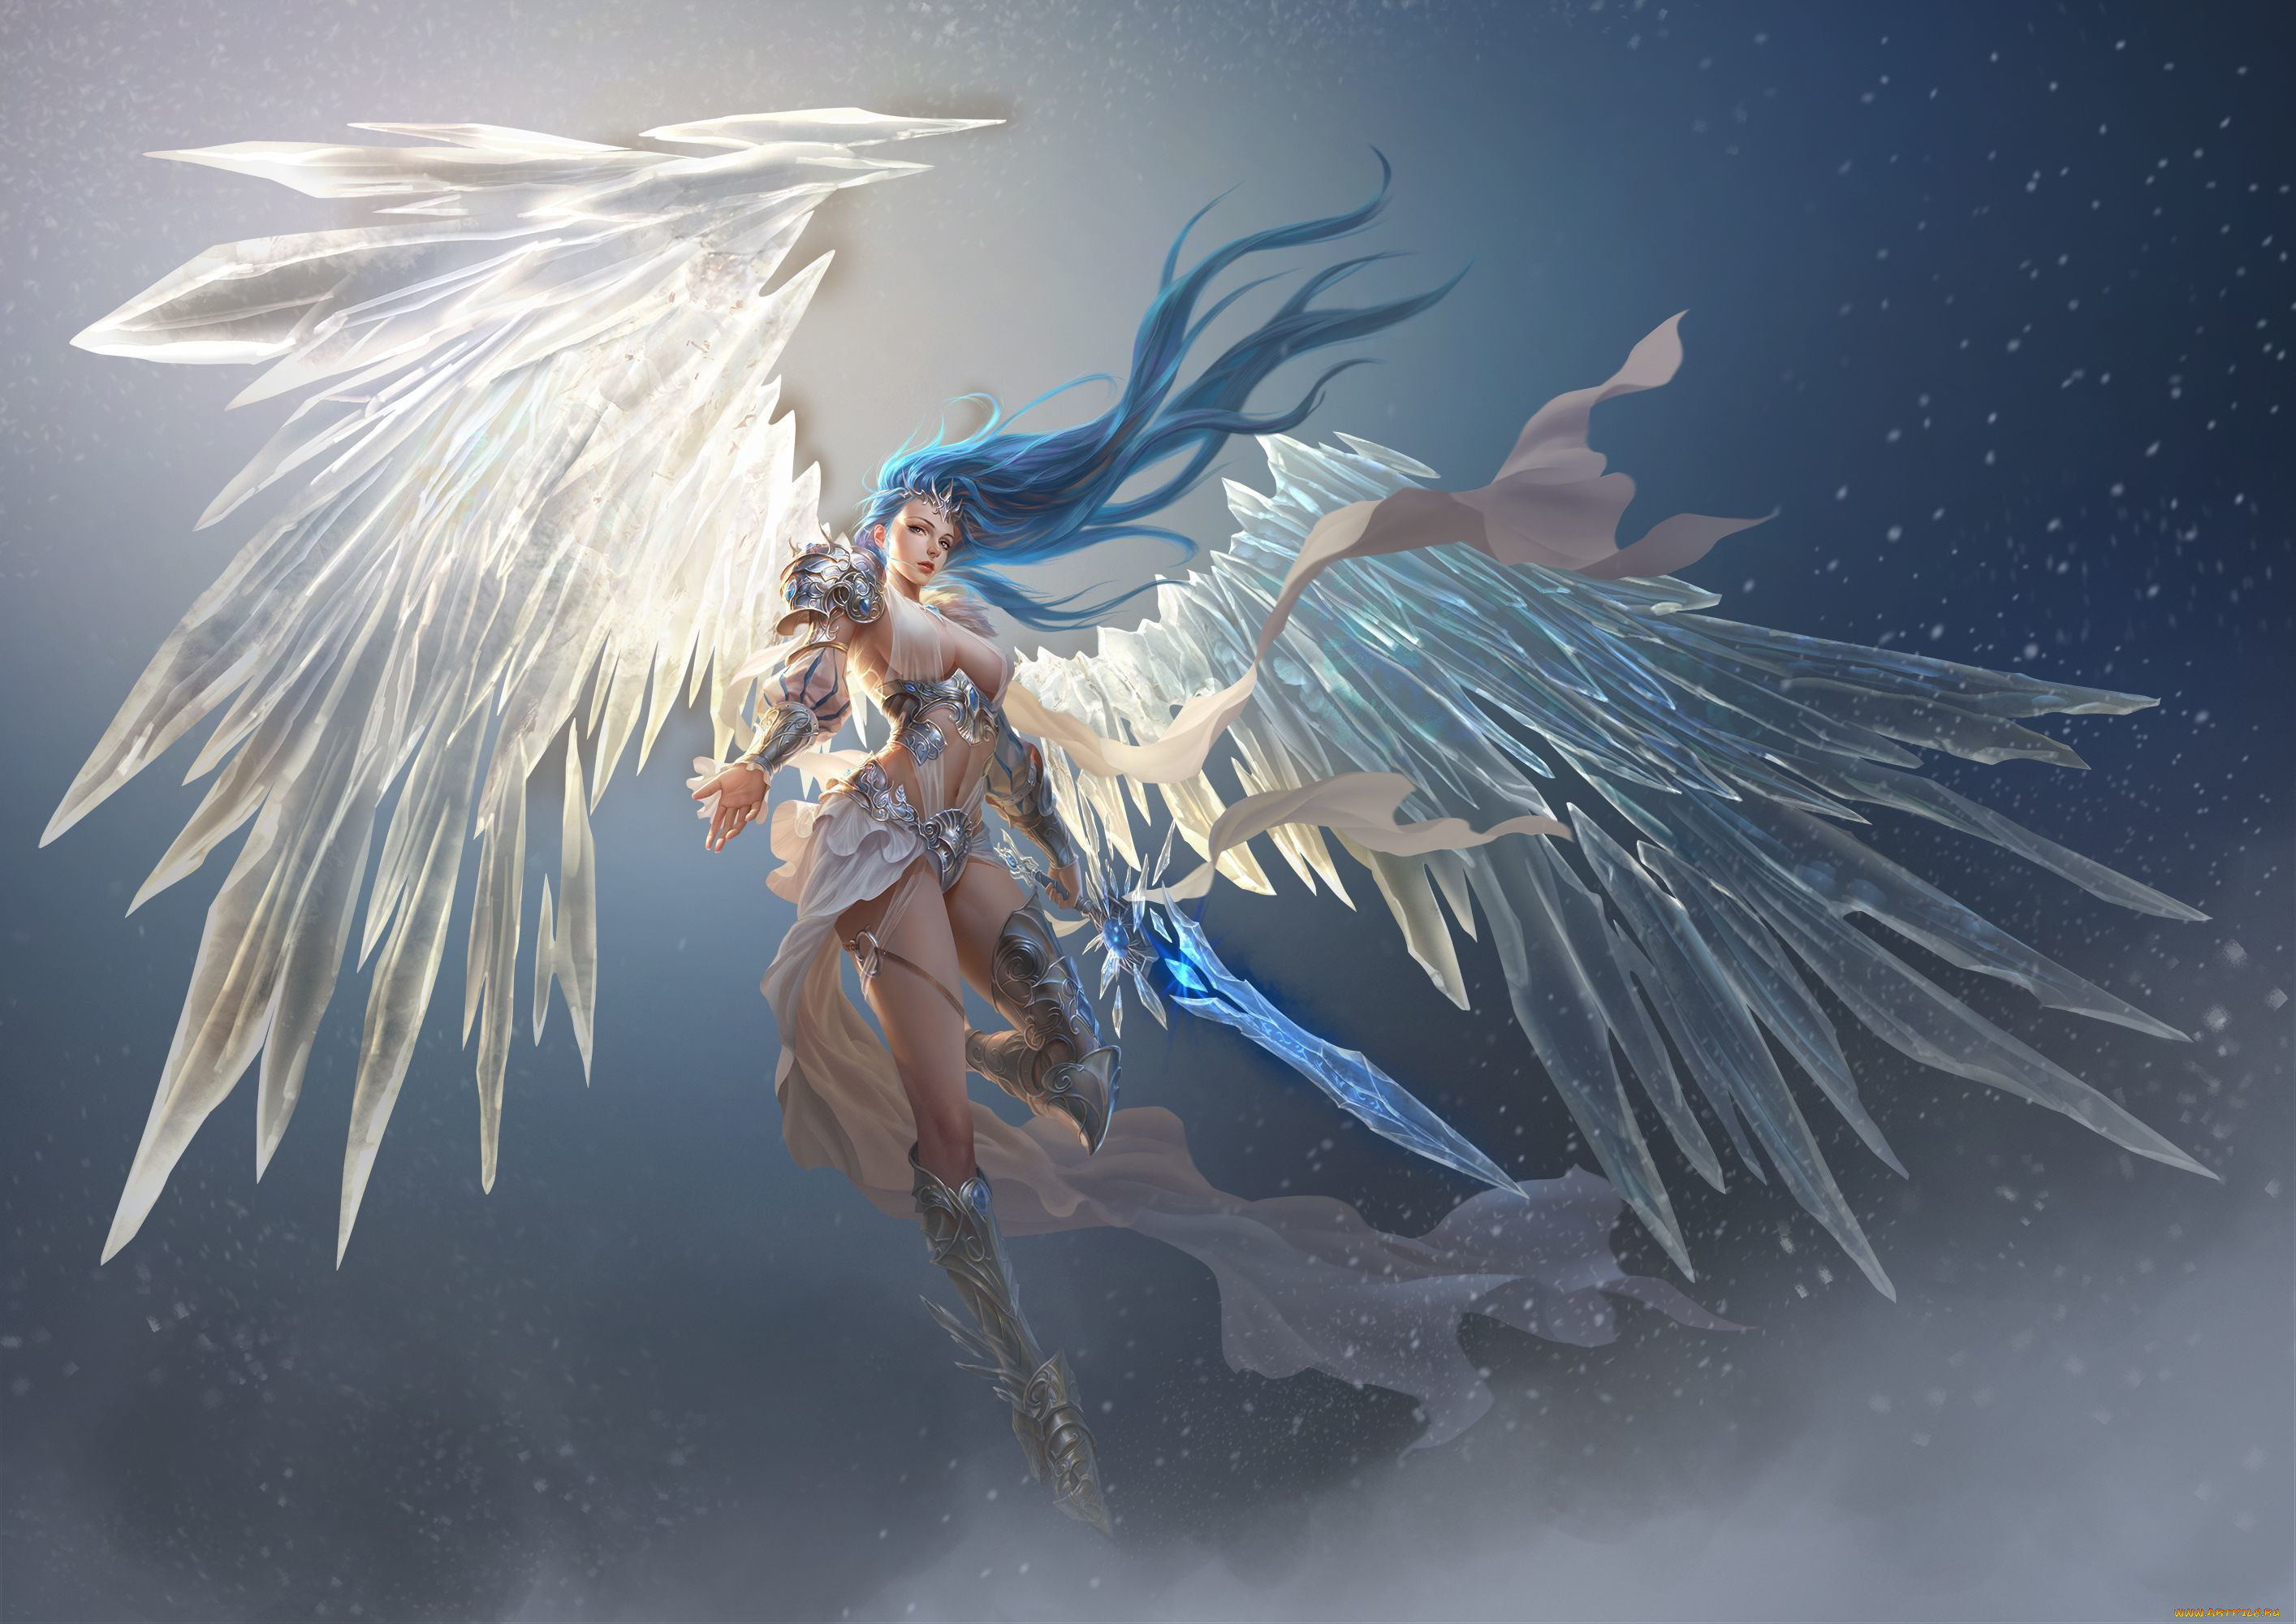 Angel ii